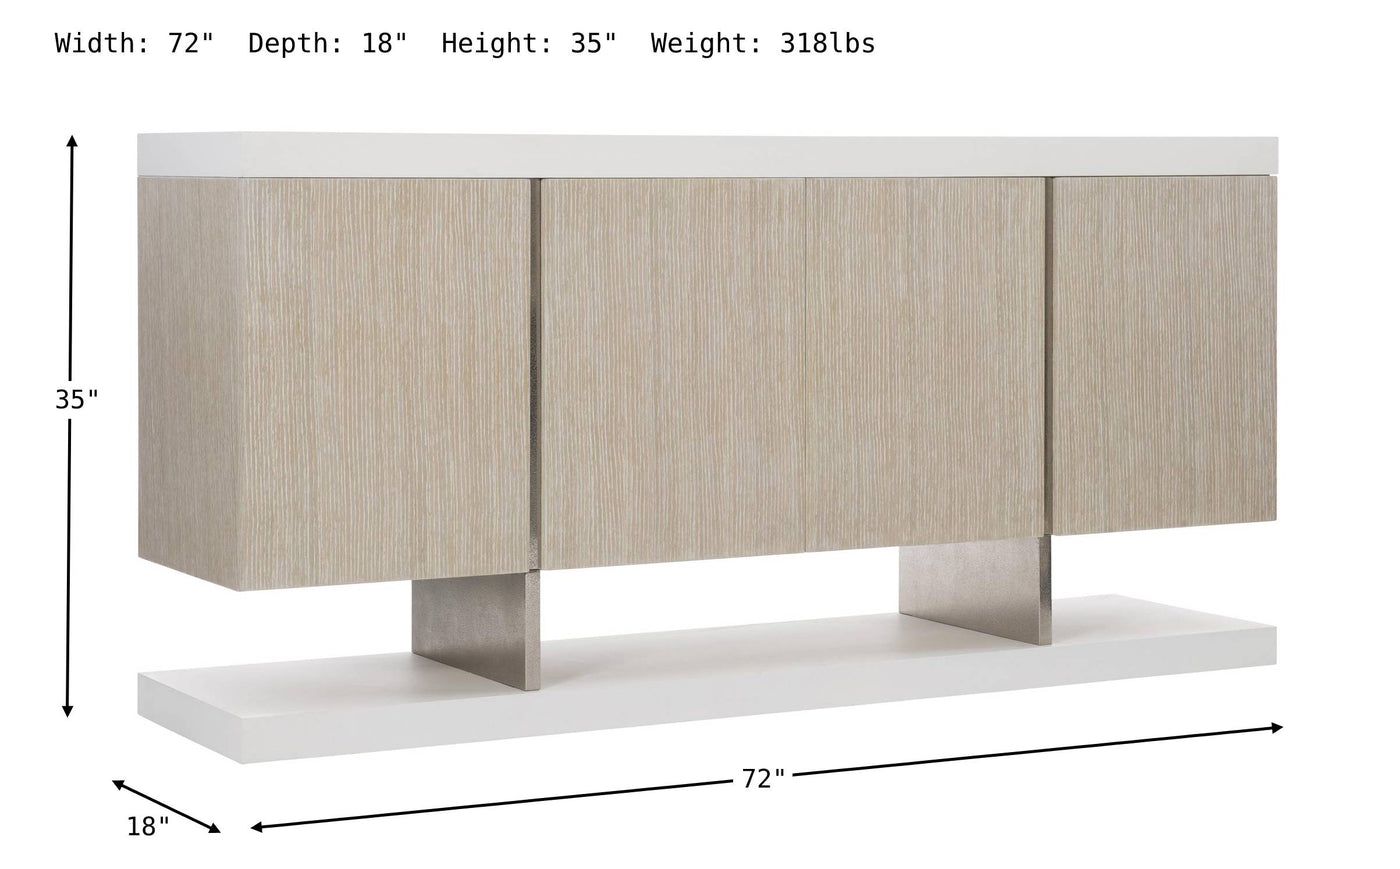 Solaria Sideboard-Sideboards-Jennifer Furniture